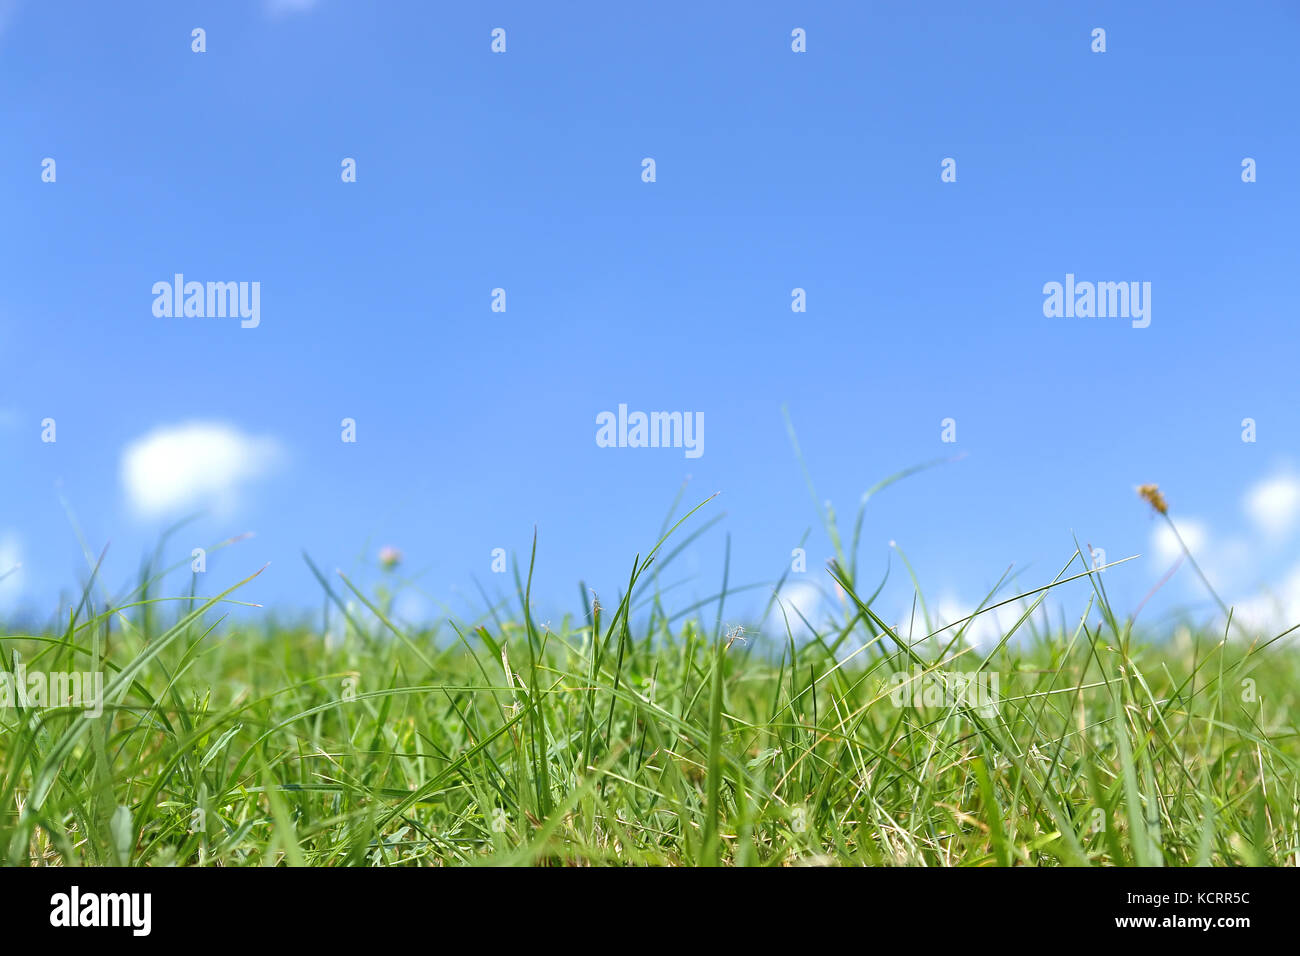 Fresco di erba verde contro il cielo blu con nuvole Foto Stock